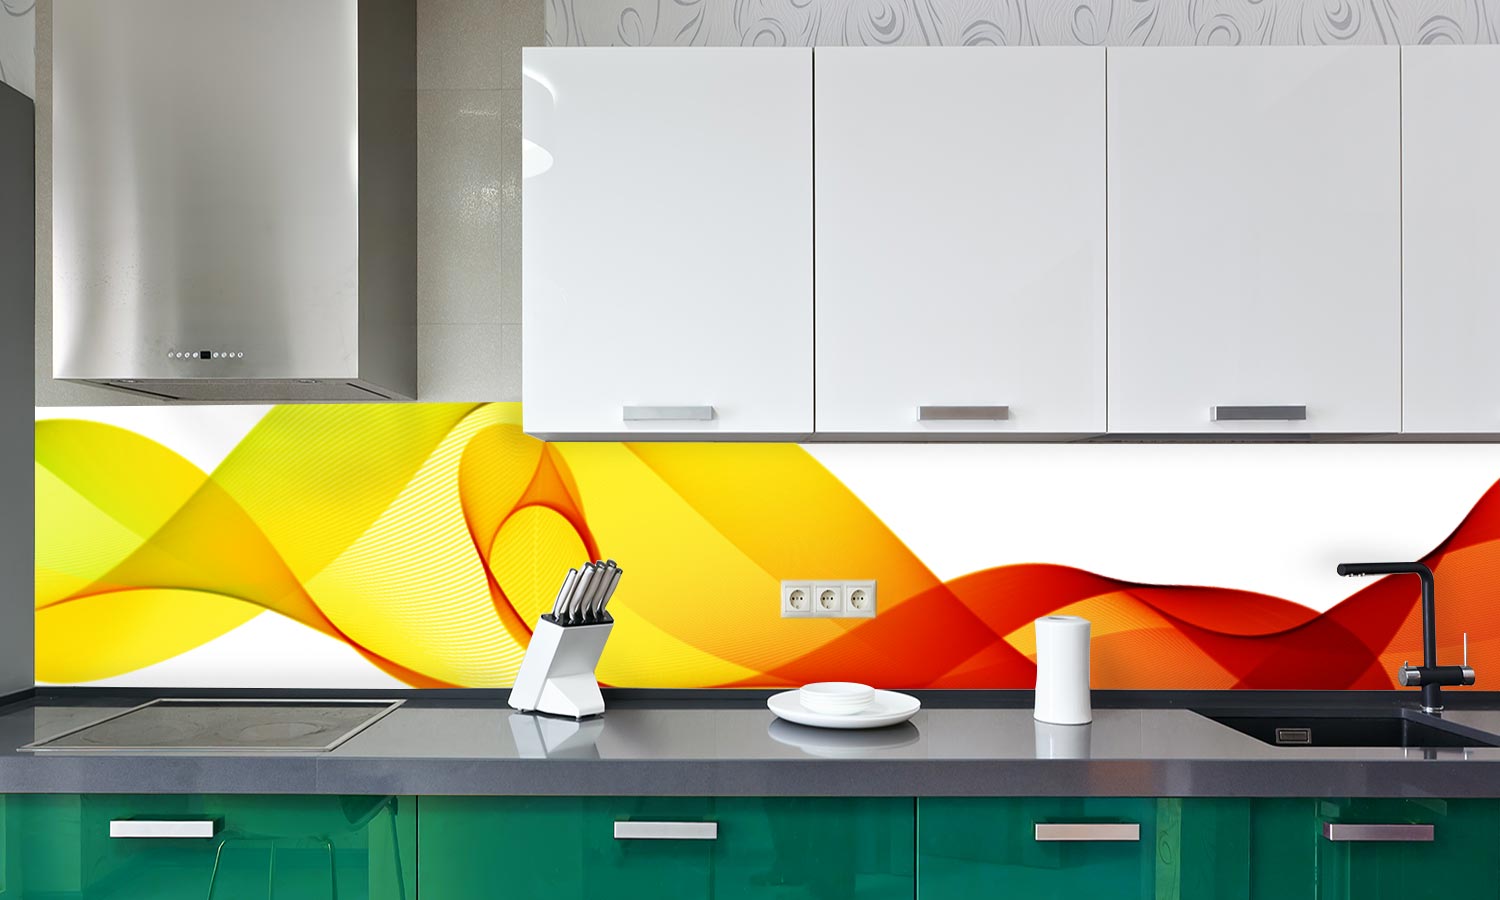 Kuhinjski paneli   Topli valovi - Stekleni / PVC plošče / Pleksi steklo - s tiskom za kuhinjo, Stenske obloge PKU040 - Life-decor.si